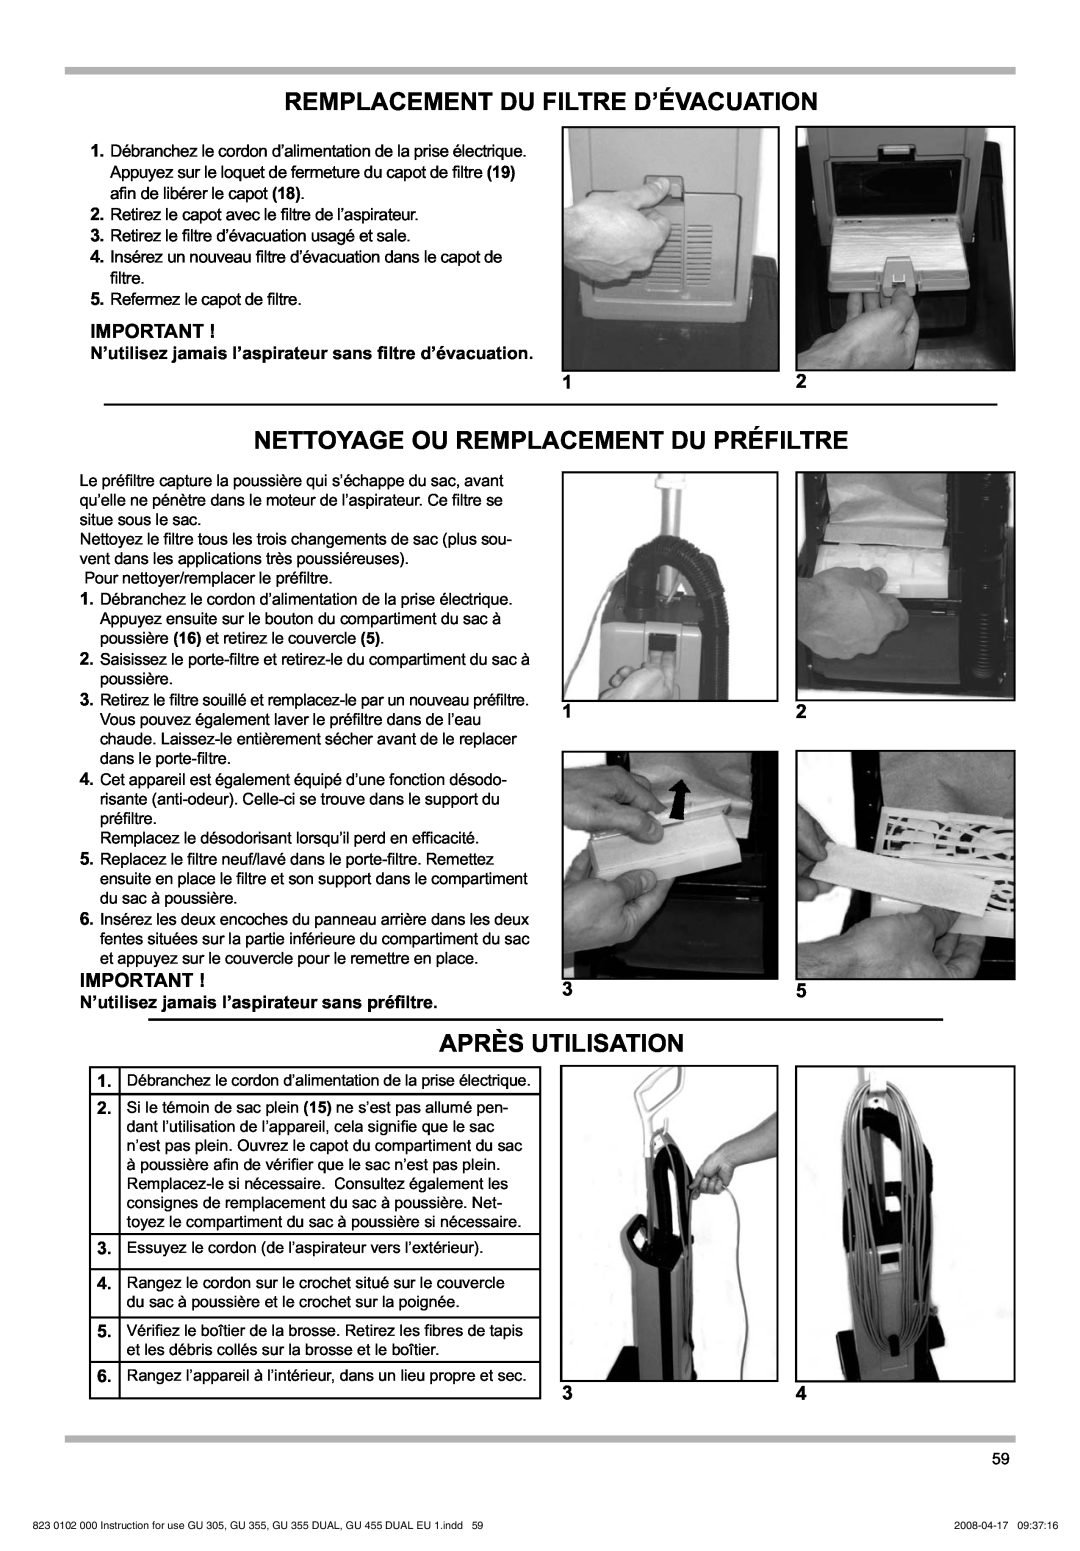 Nilfisk-Advance America GU 15 DMU, GU 305 manual Remplacement Du Filtre D’Évacuation, Nettoyage Ou Remplacement Du Préfiltre 